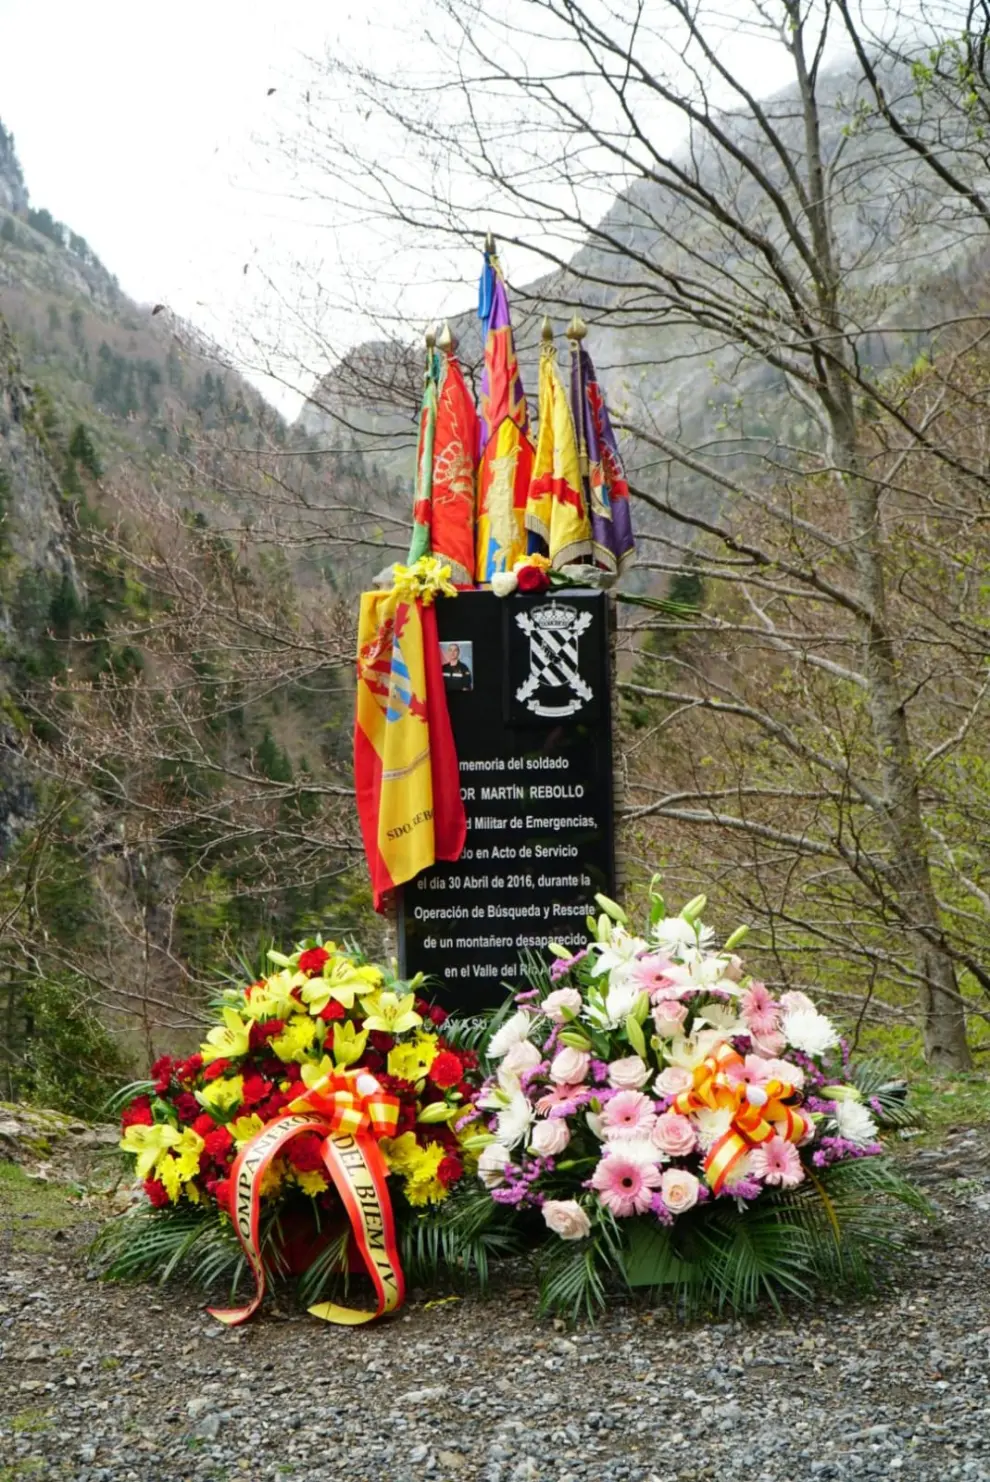 Homenaje al militar de la UME muerto en Bujaruelo.